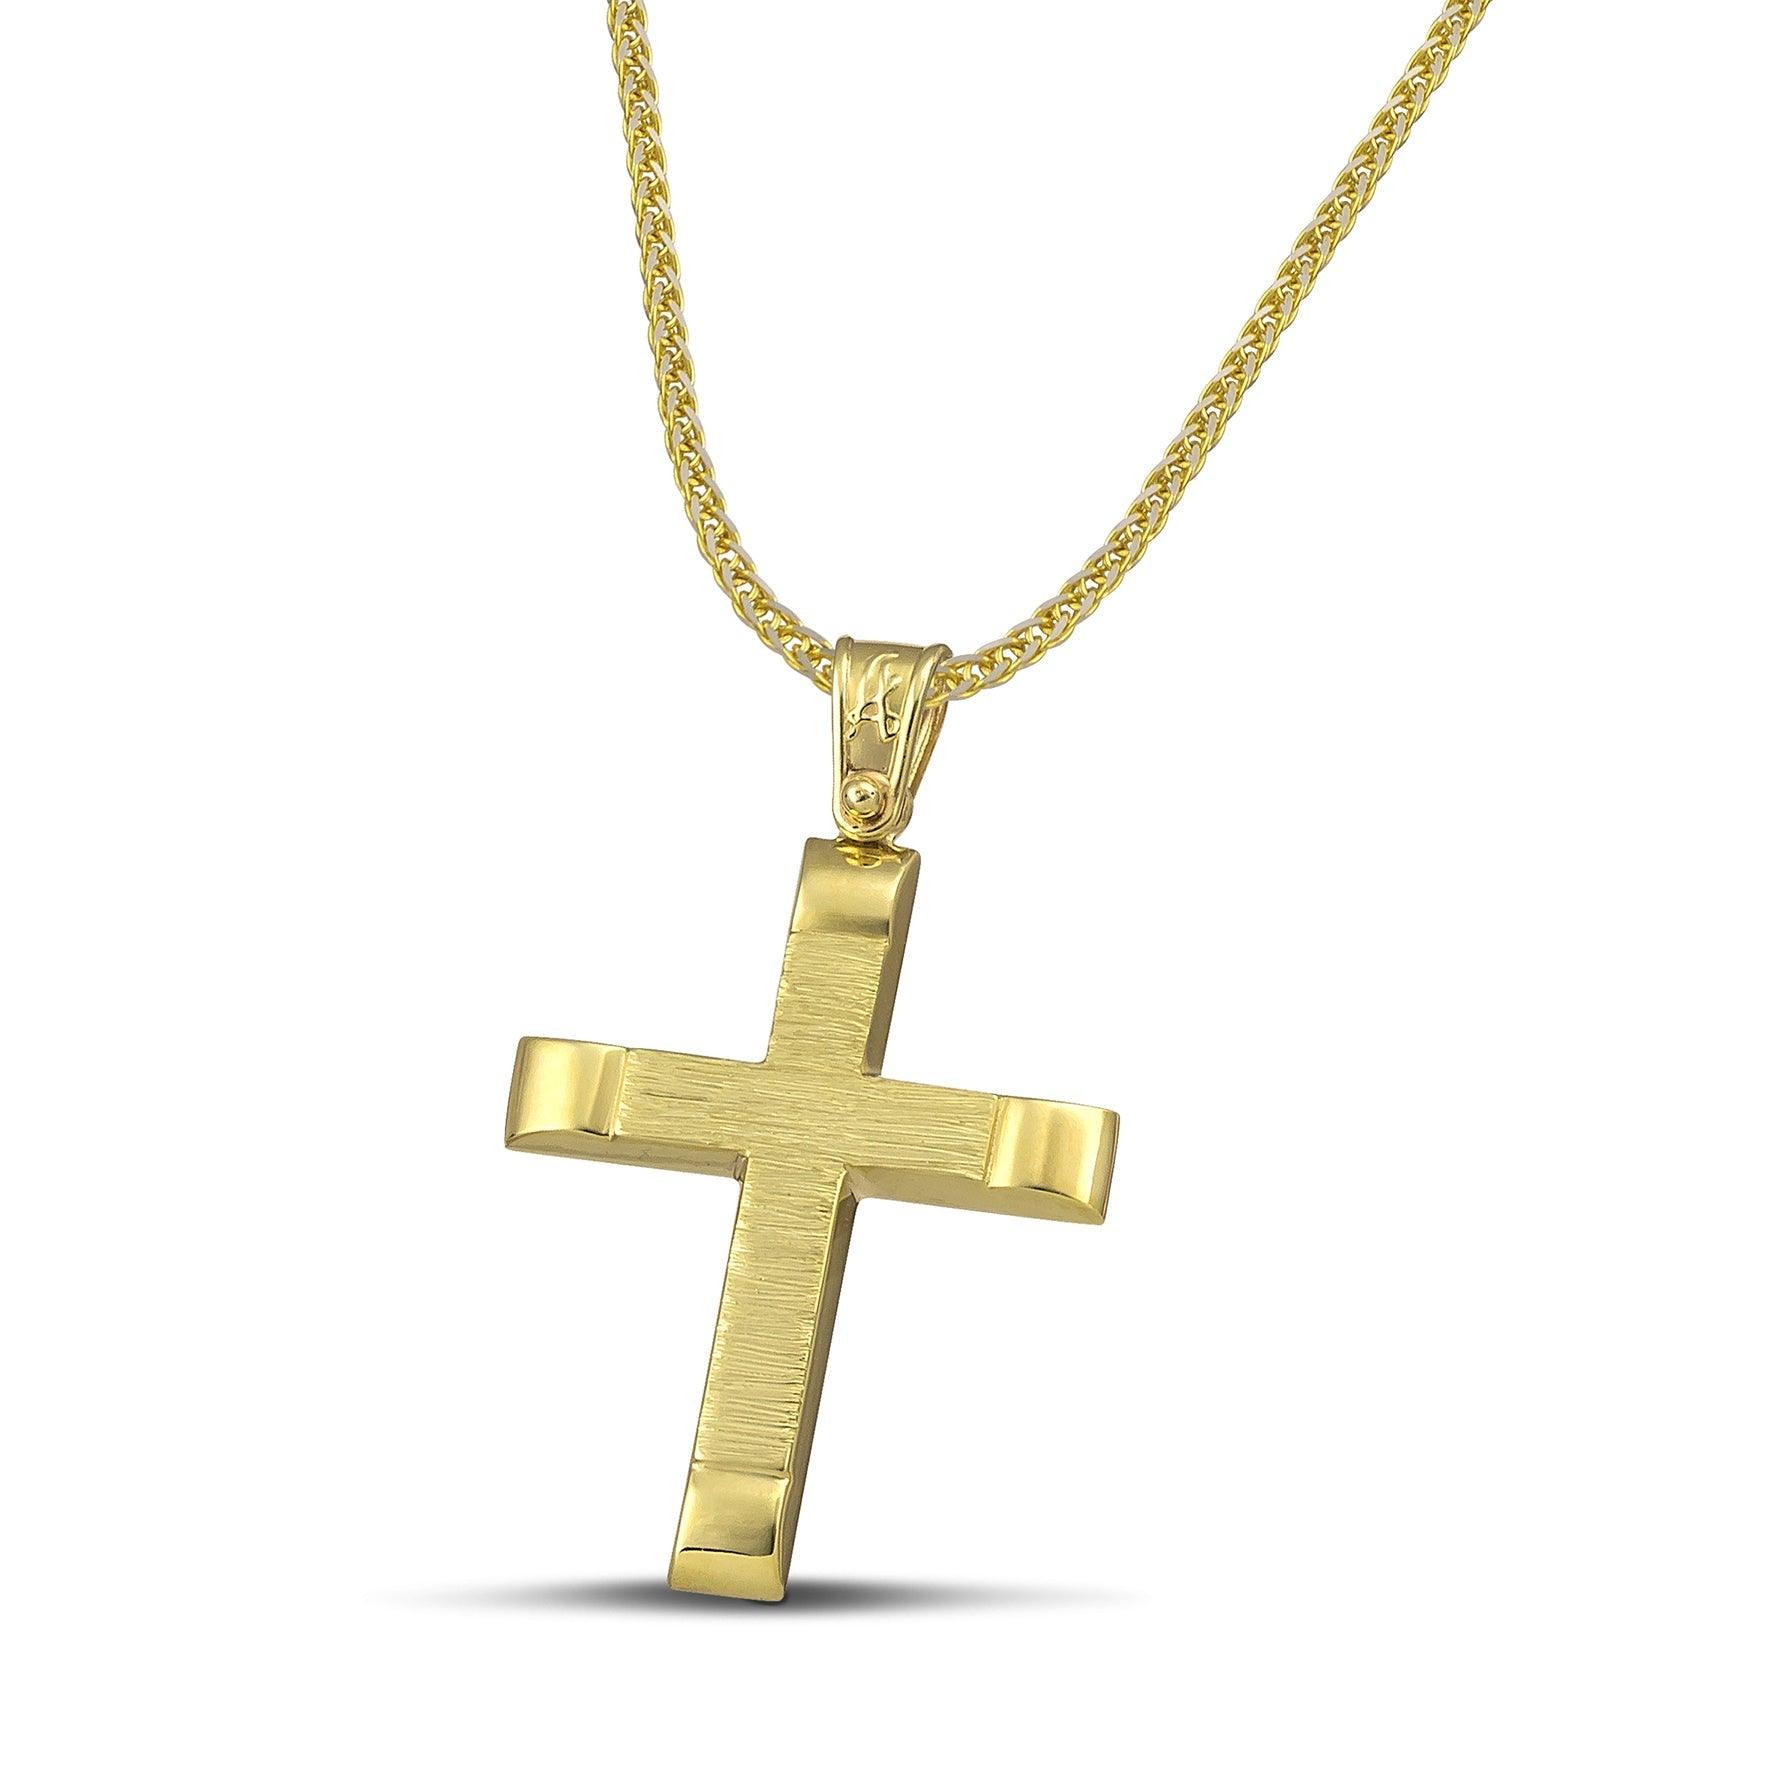 Αντρικός χρυσός βαφτιστικός σταυρός Κ14, σαγρέ με λουστράτες άκρες και πυκνή αλυσίδα.